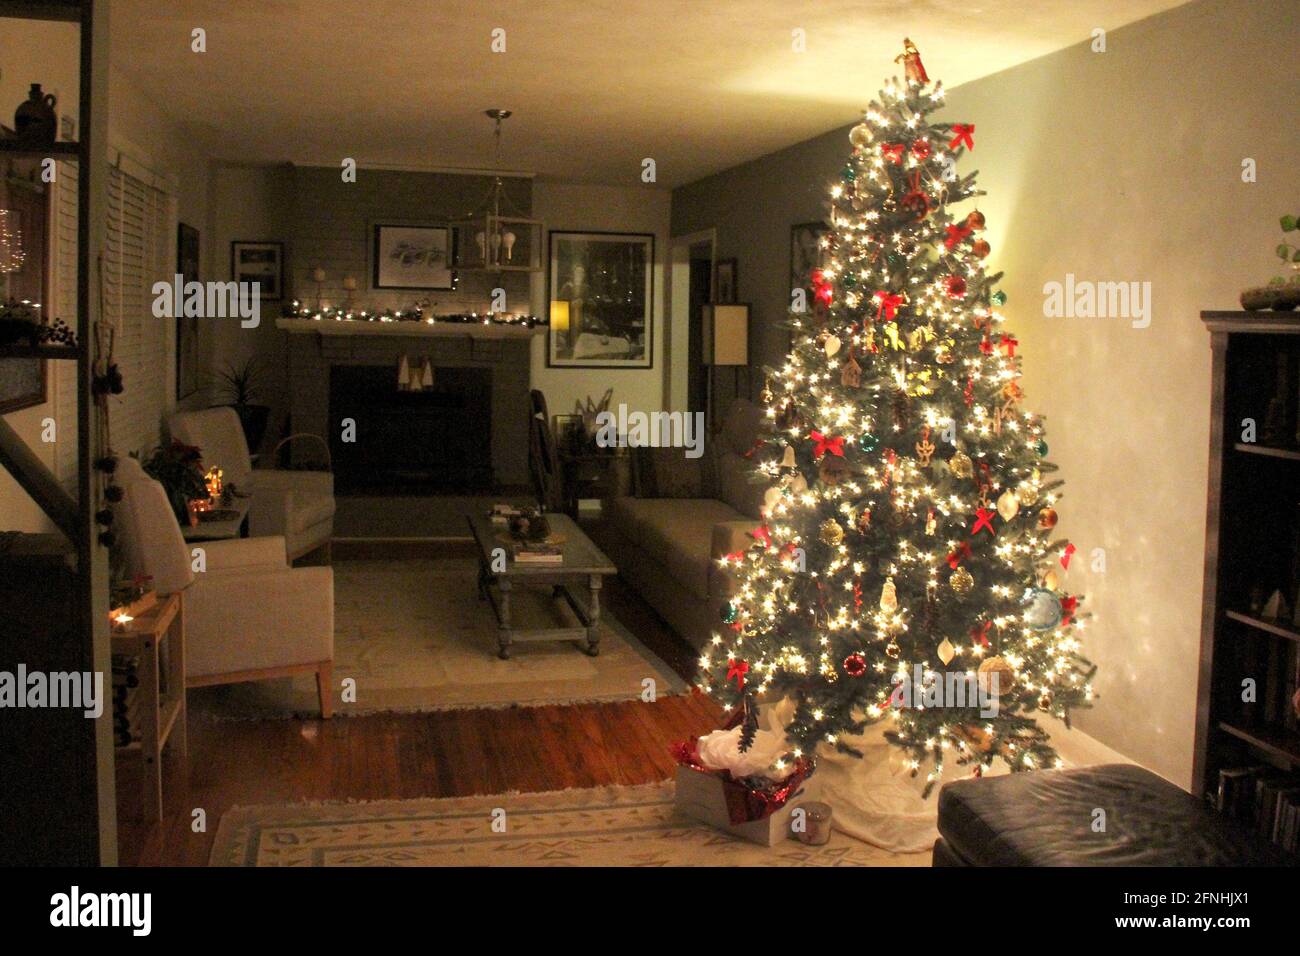 Interior of a family room with illuminated Christmas tree Stock Photo